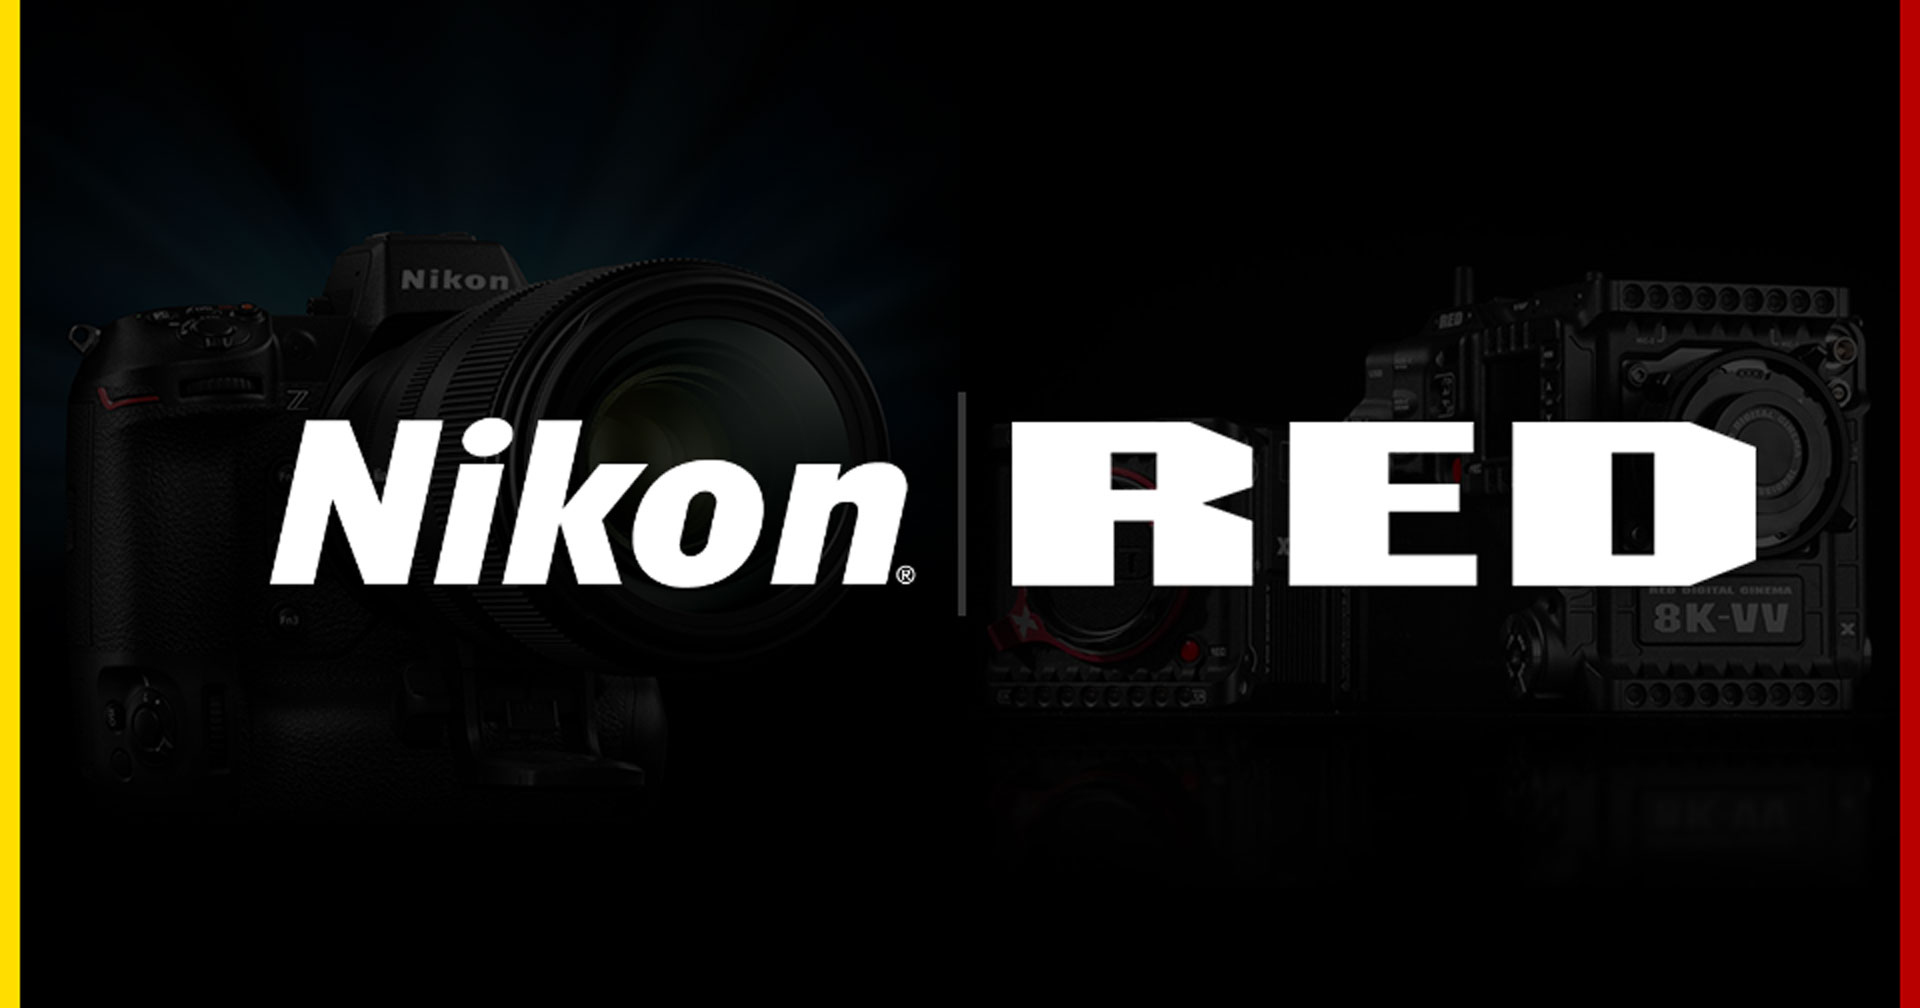 คาดการณ์อนาคต Nikon หลังเข้าซื้อ RED หรือจะได้เห็นเซนเซอร์รุ่นใหม่ที่พัฒนาร่วมกัน!?